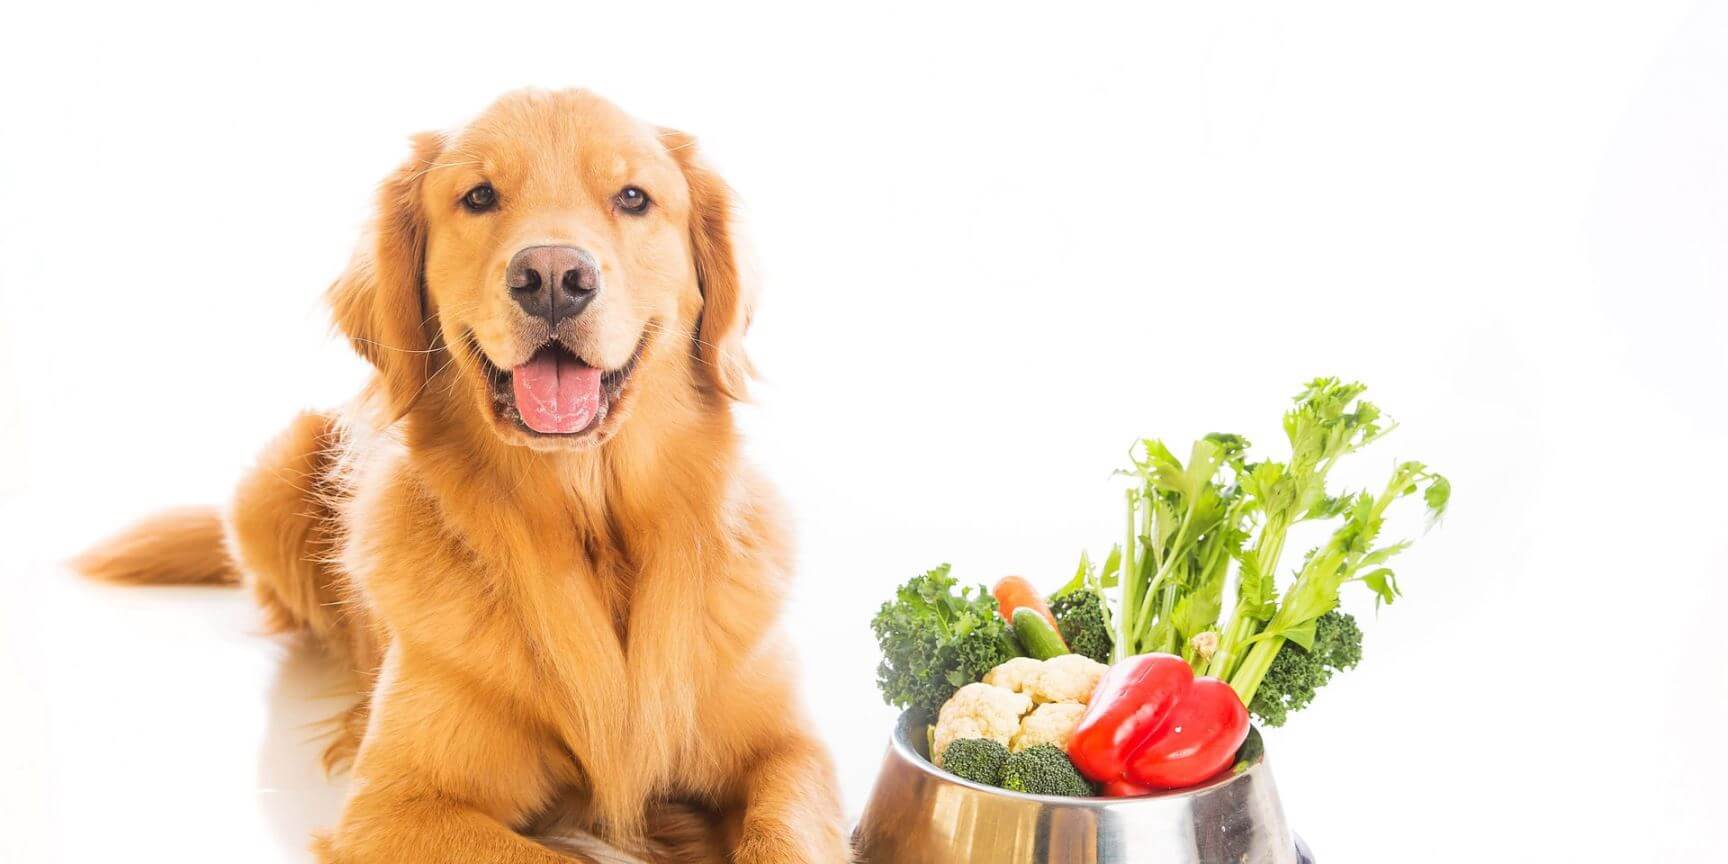 سبزیجات مناسب برای سگ ها | petlink